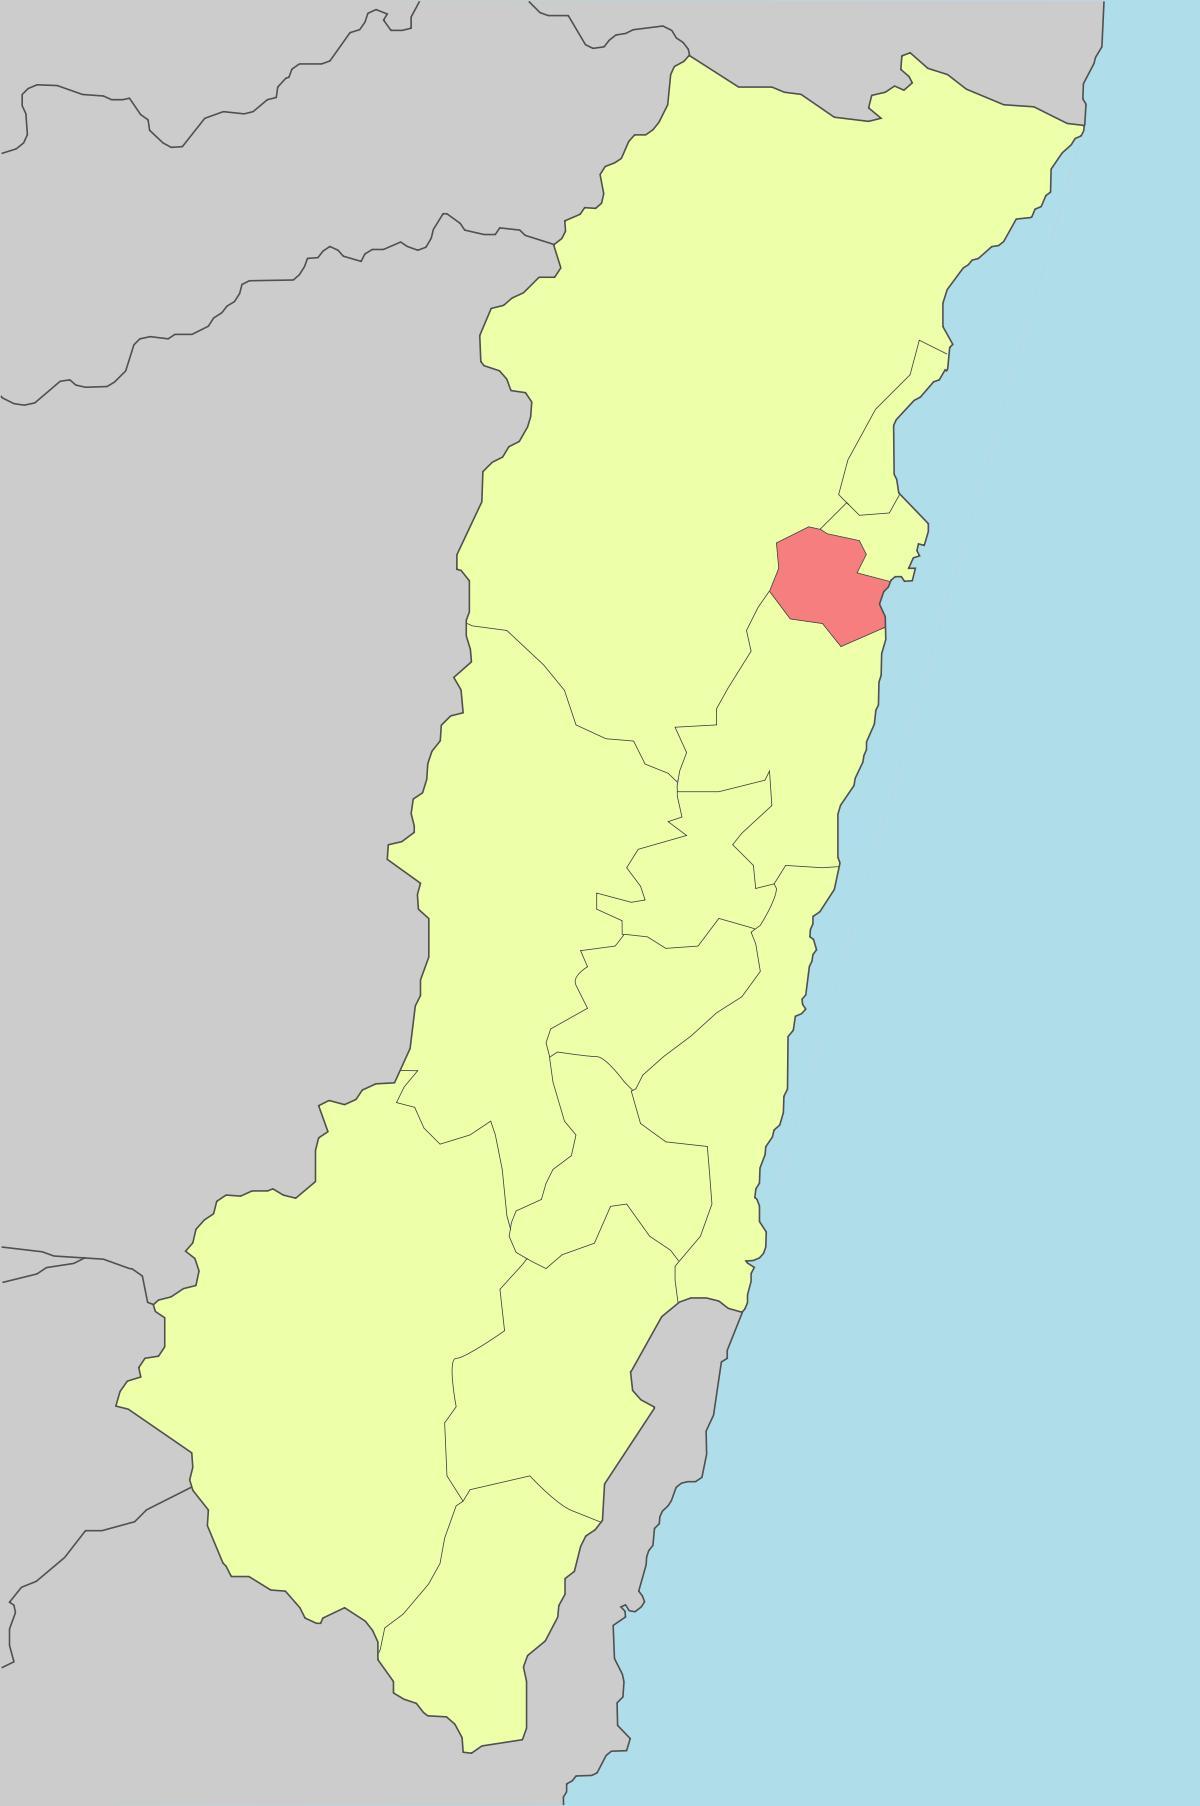 Mapu hualien Taiwan